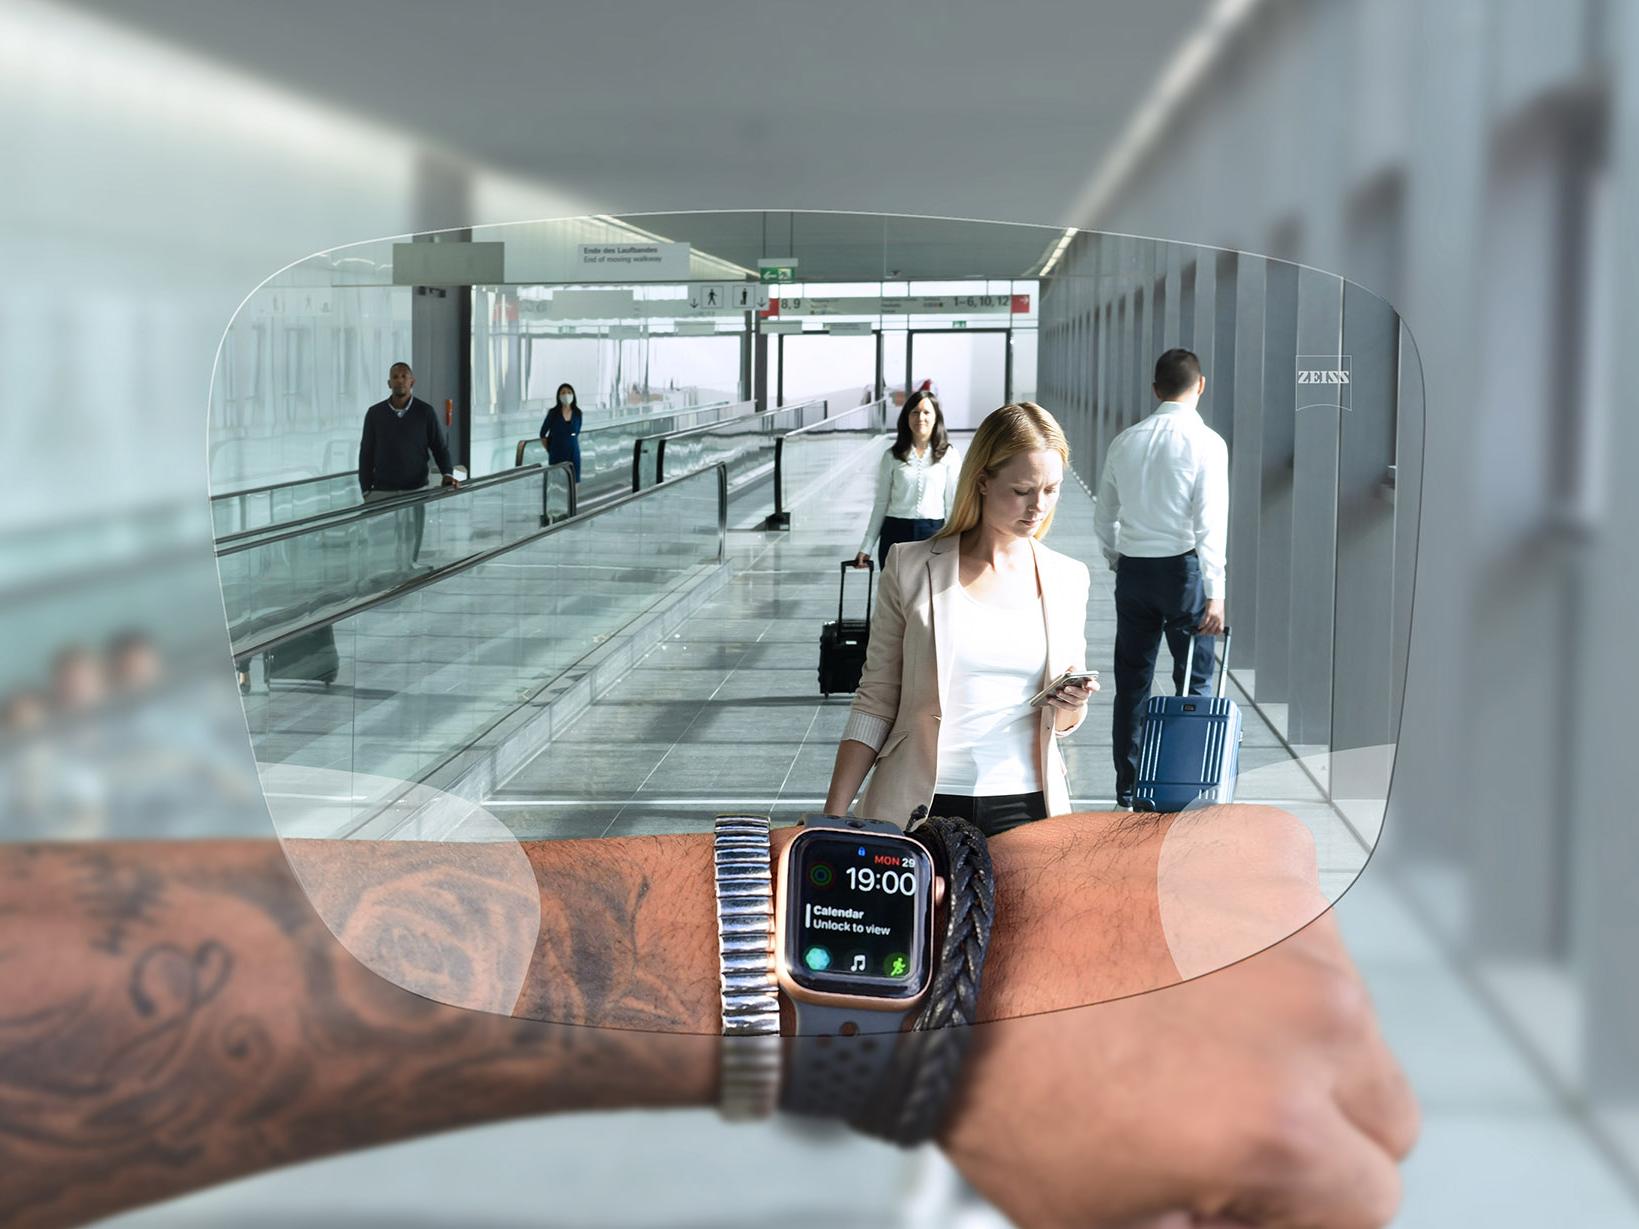 透過蔡司 SmartLife 數碼鏡片看手錶的人。在背景中可以看到典型的機場情景，人們推著行李箱上下扶梯。 